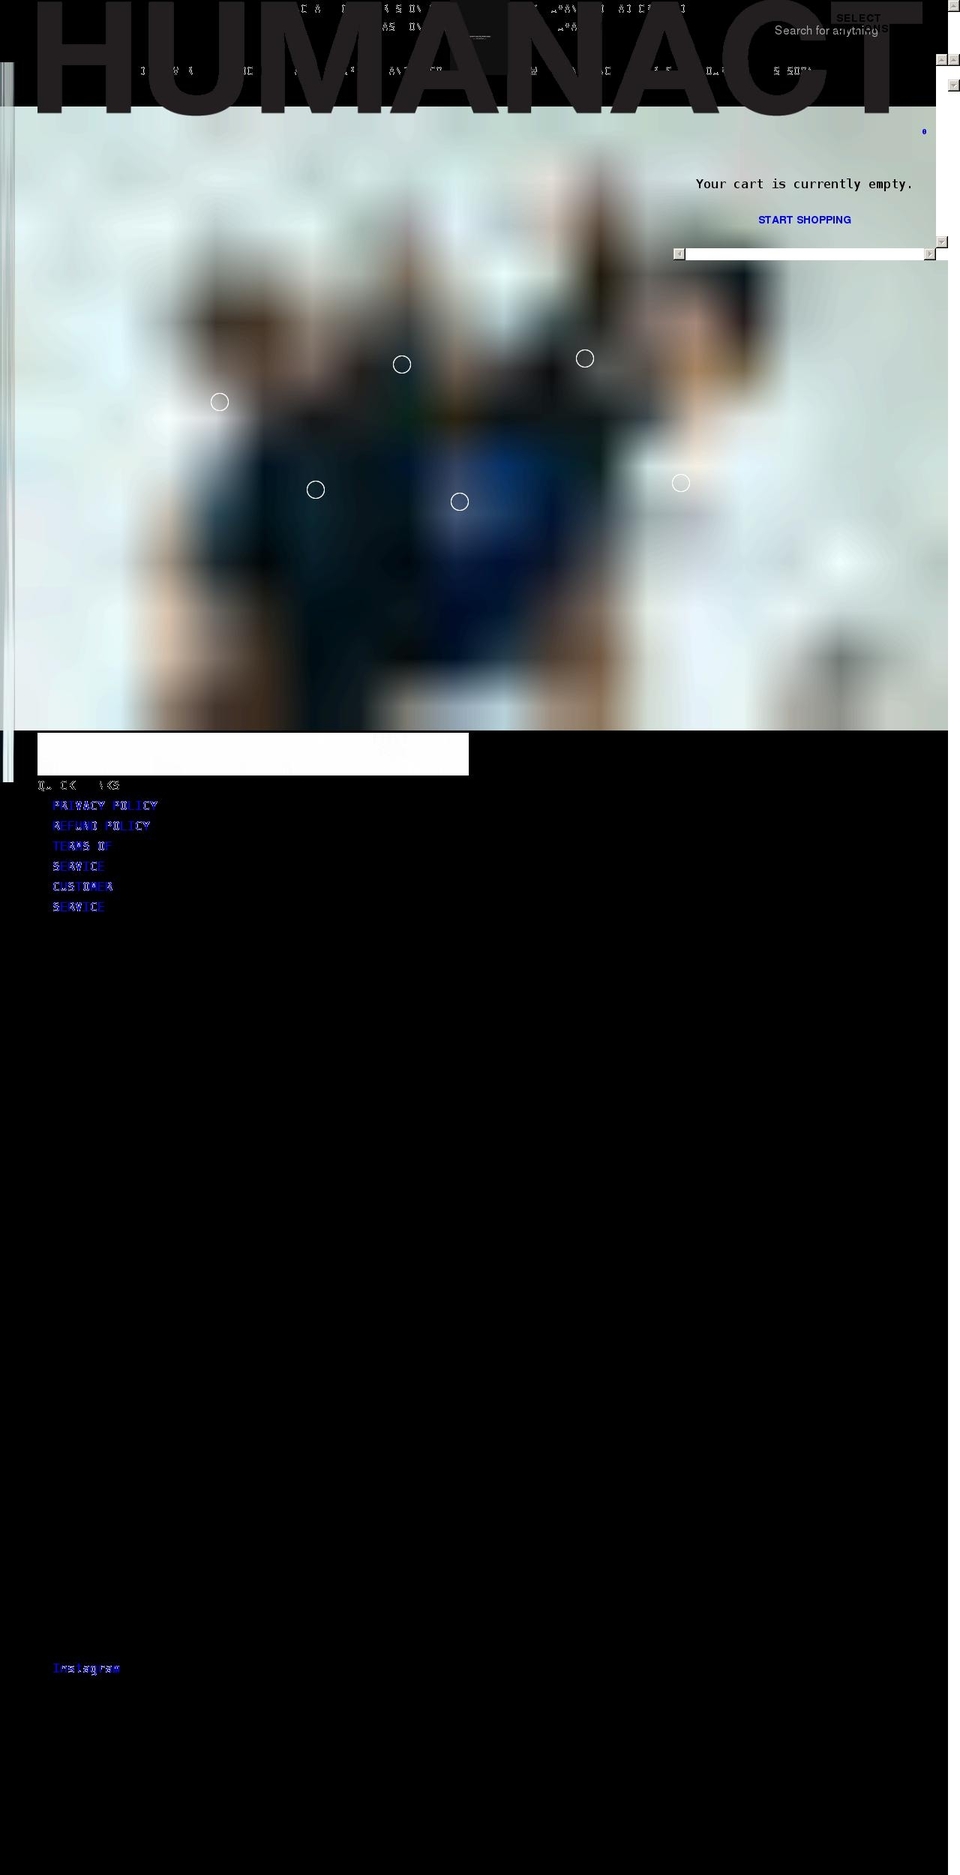 thehumanact.com shopify website screenshot